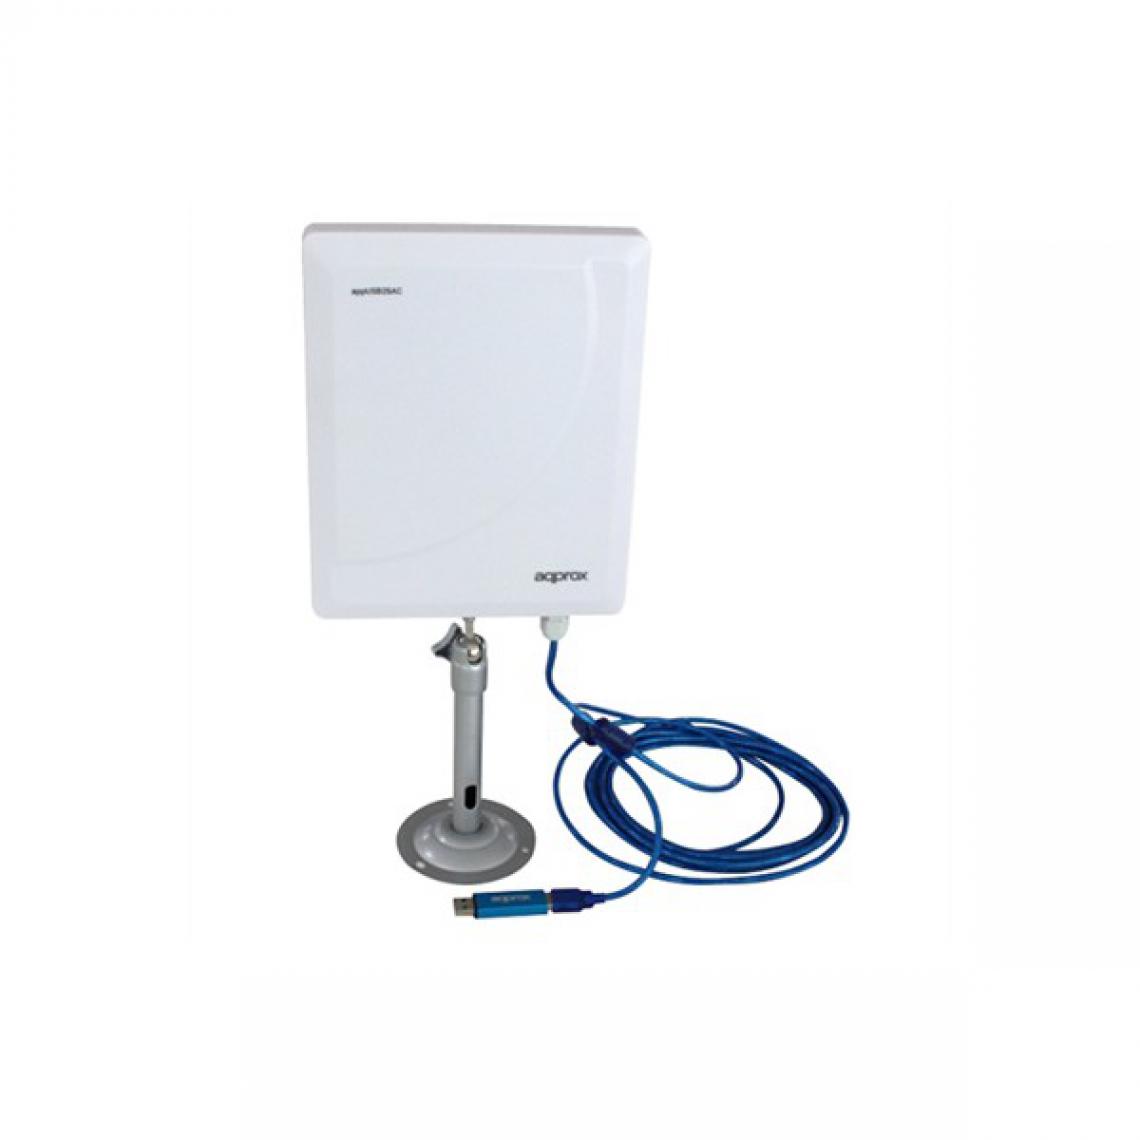 Unknown - Antenne Wifi approx! APPUSB26AC Blanc - Modem / Routeur / Points d'accès